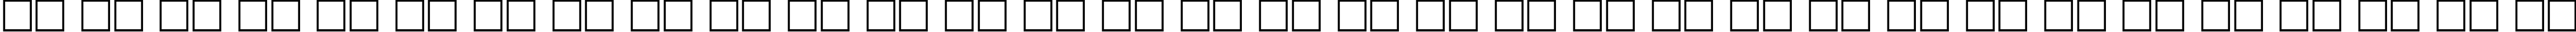 Пример написания русского алфавита шрифтом PragmaticaCTT Bold90b